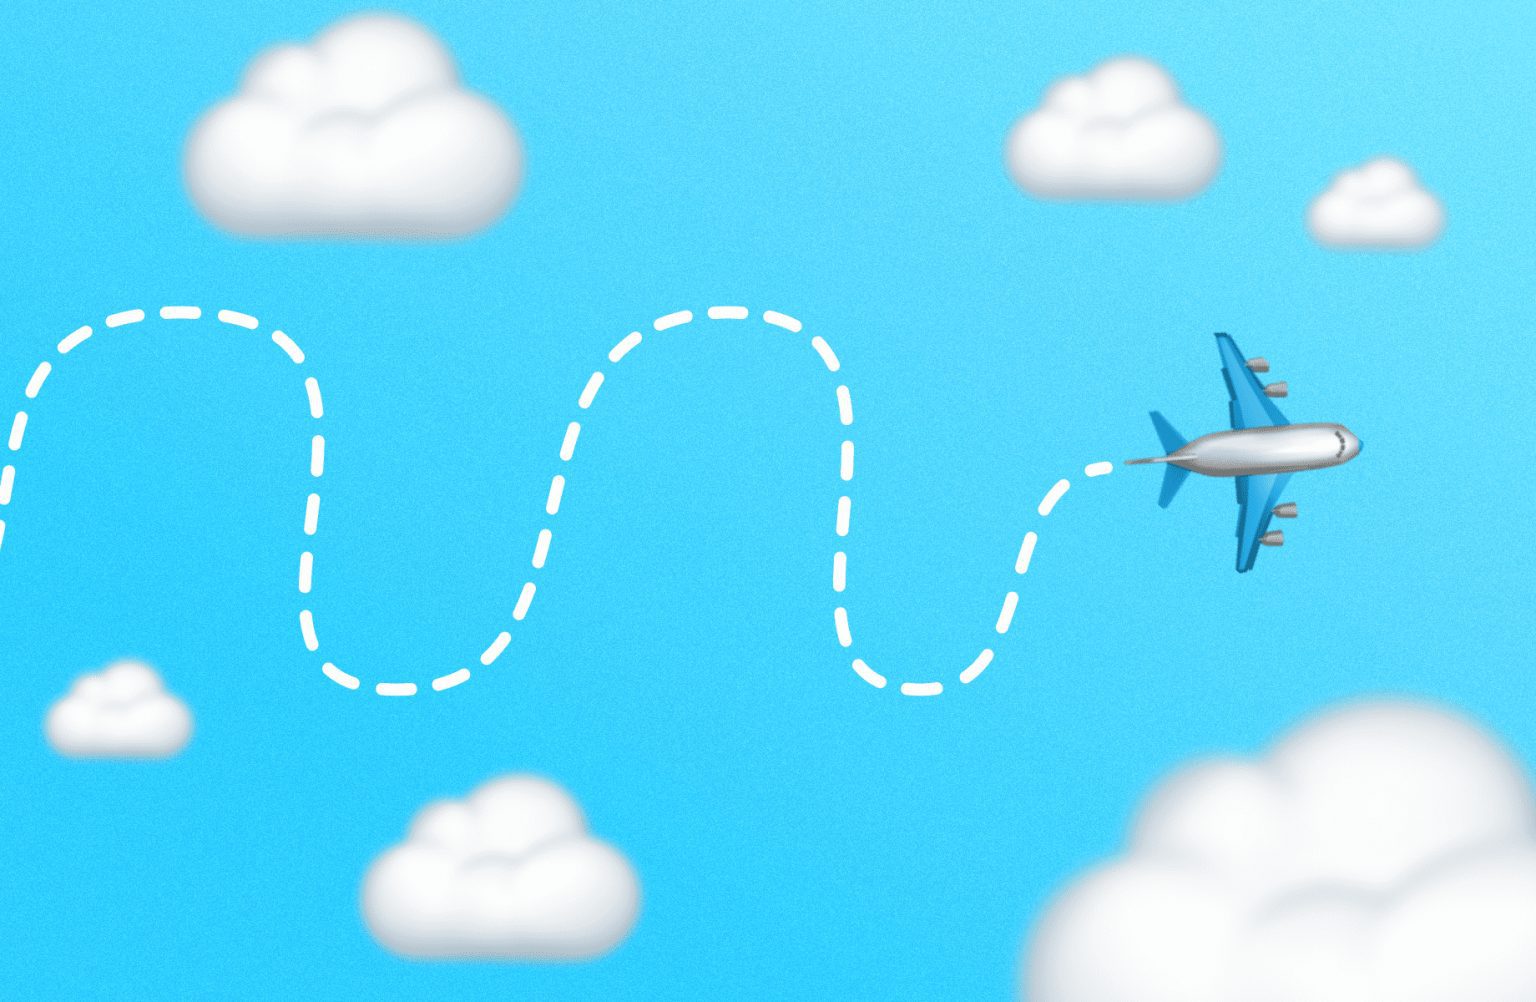 Passagem aérea em promoção: como viajar com economia em 2023?